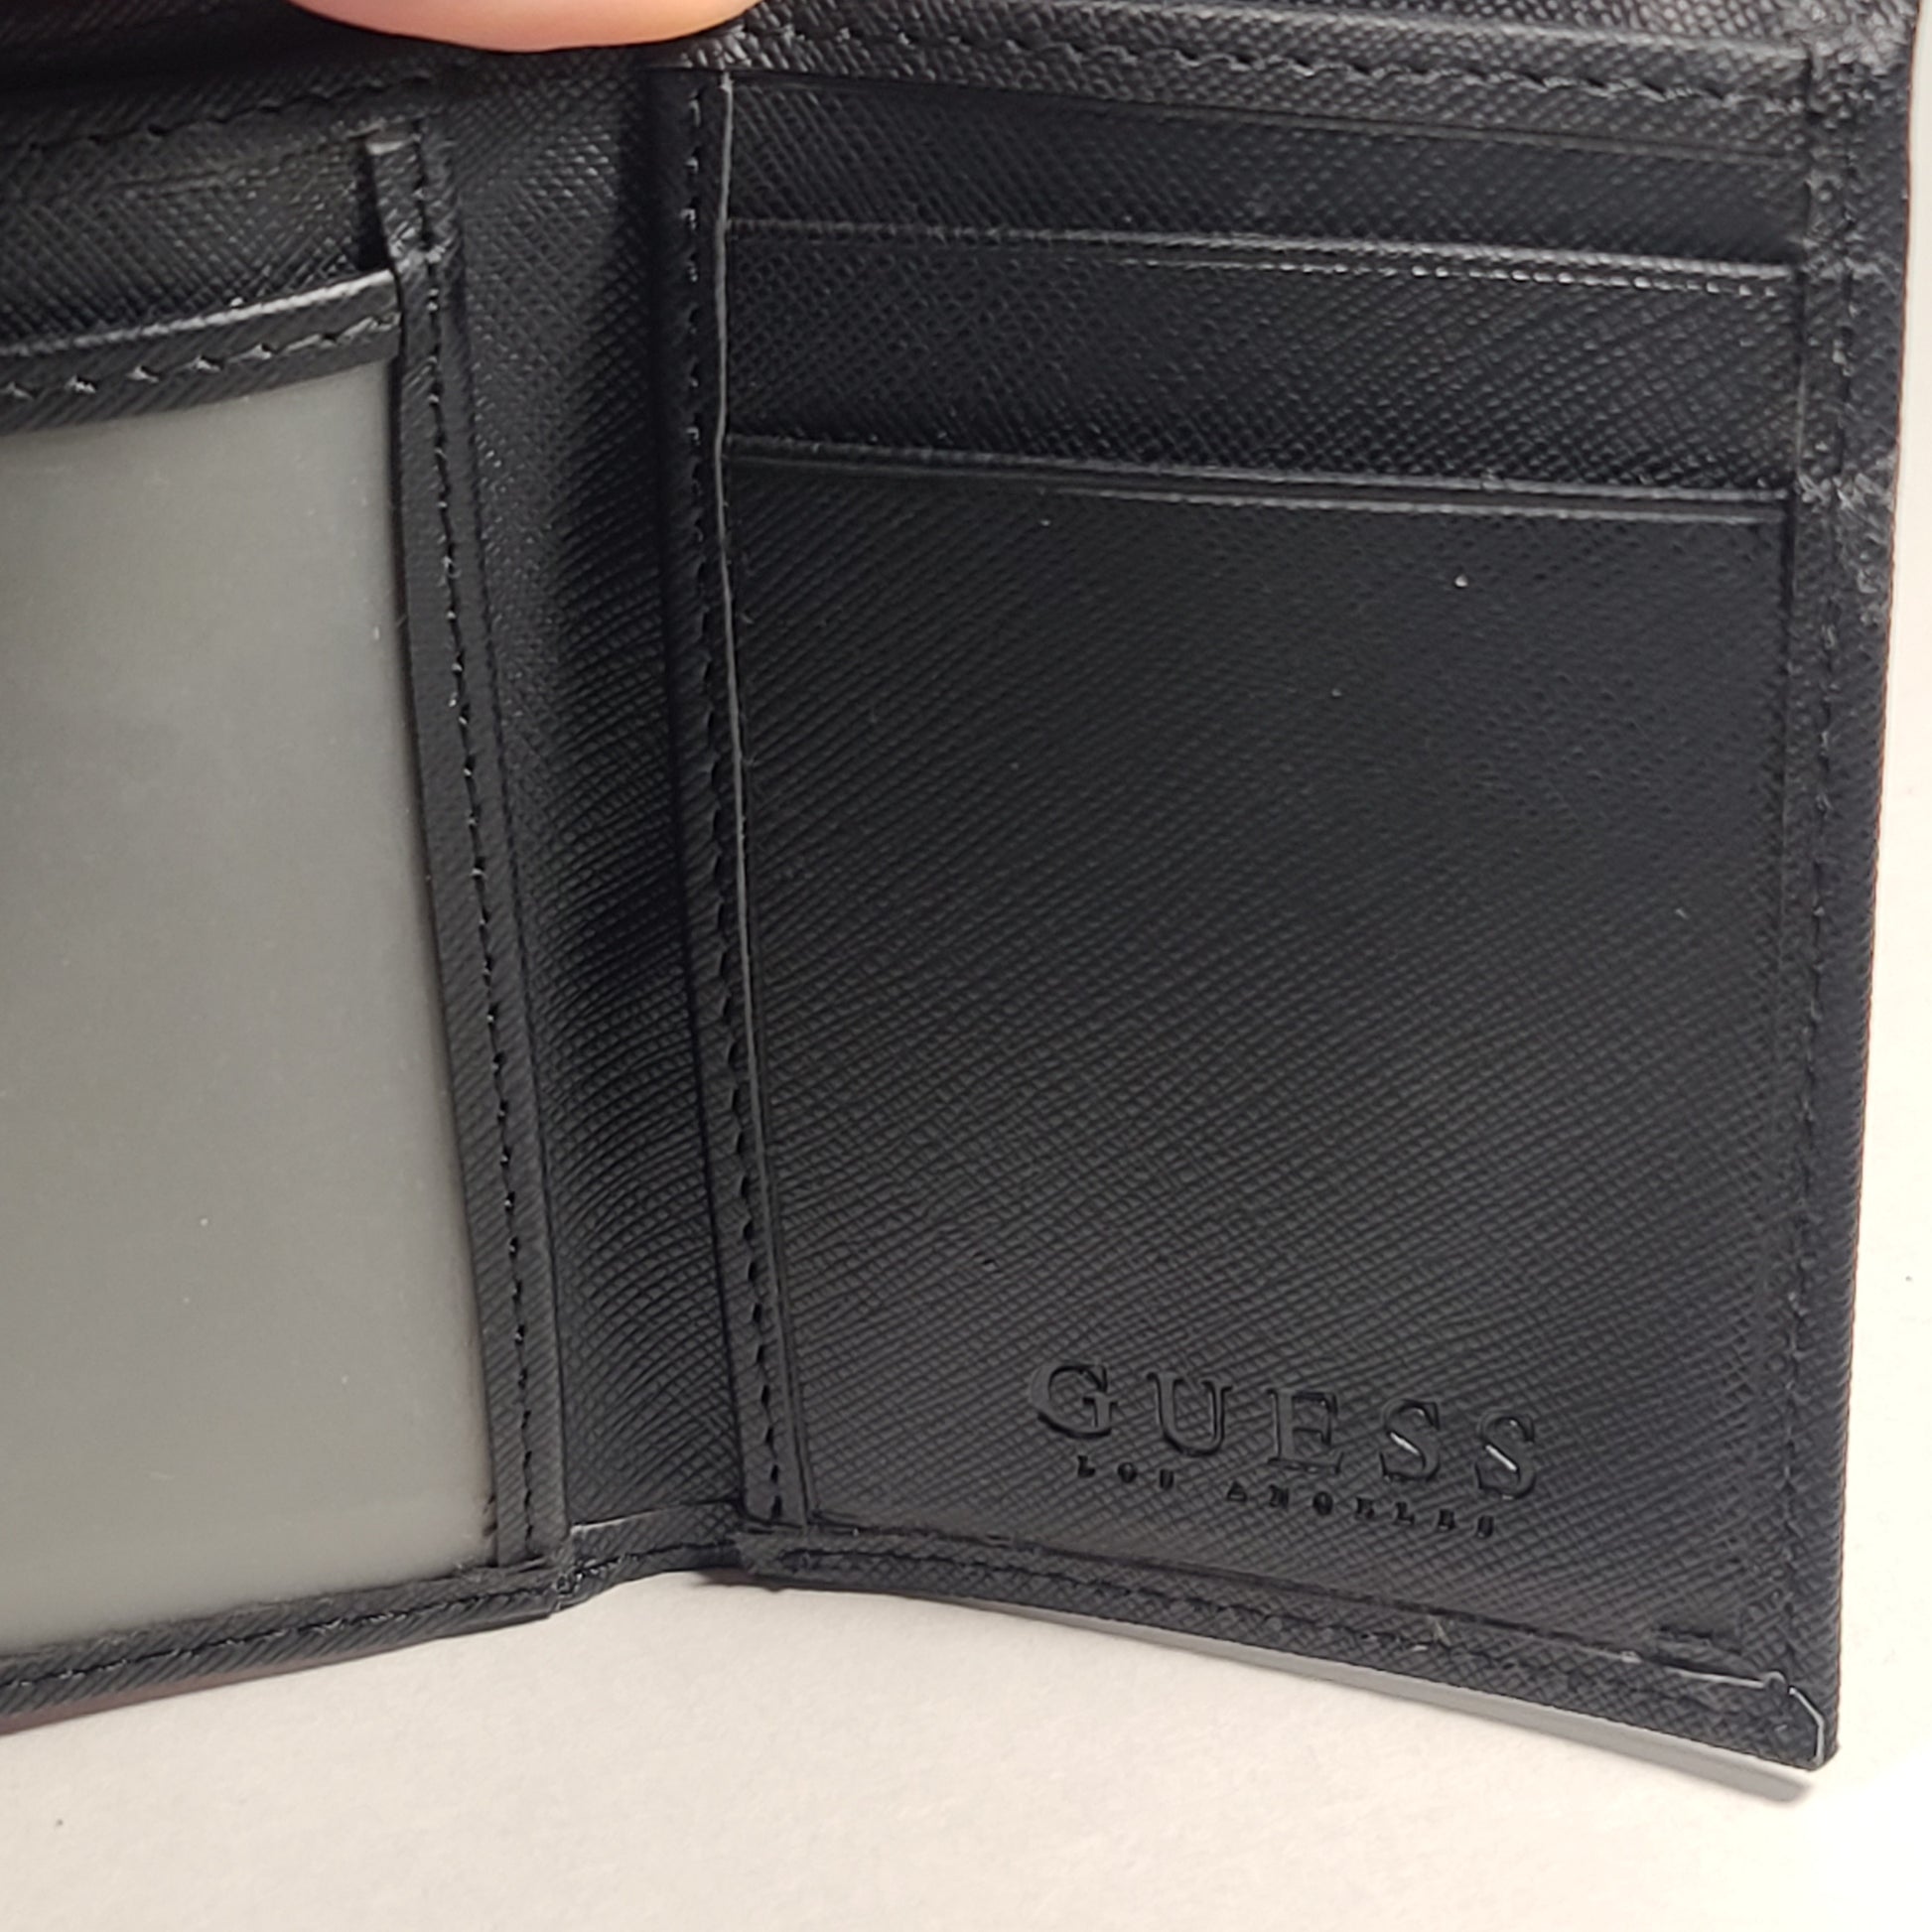 Guess Los Angeles Men’s Trifold Lion Emblem Wallet Black Passcase 31GO110040 - Wallets